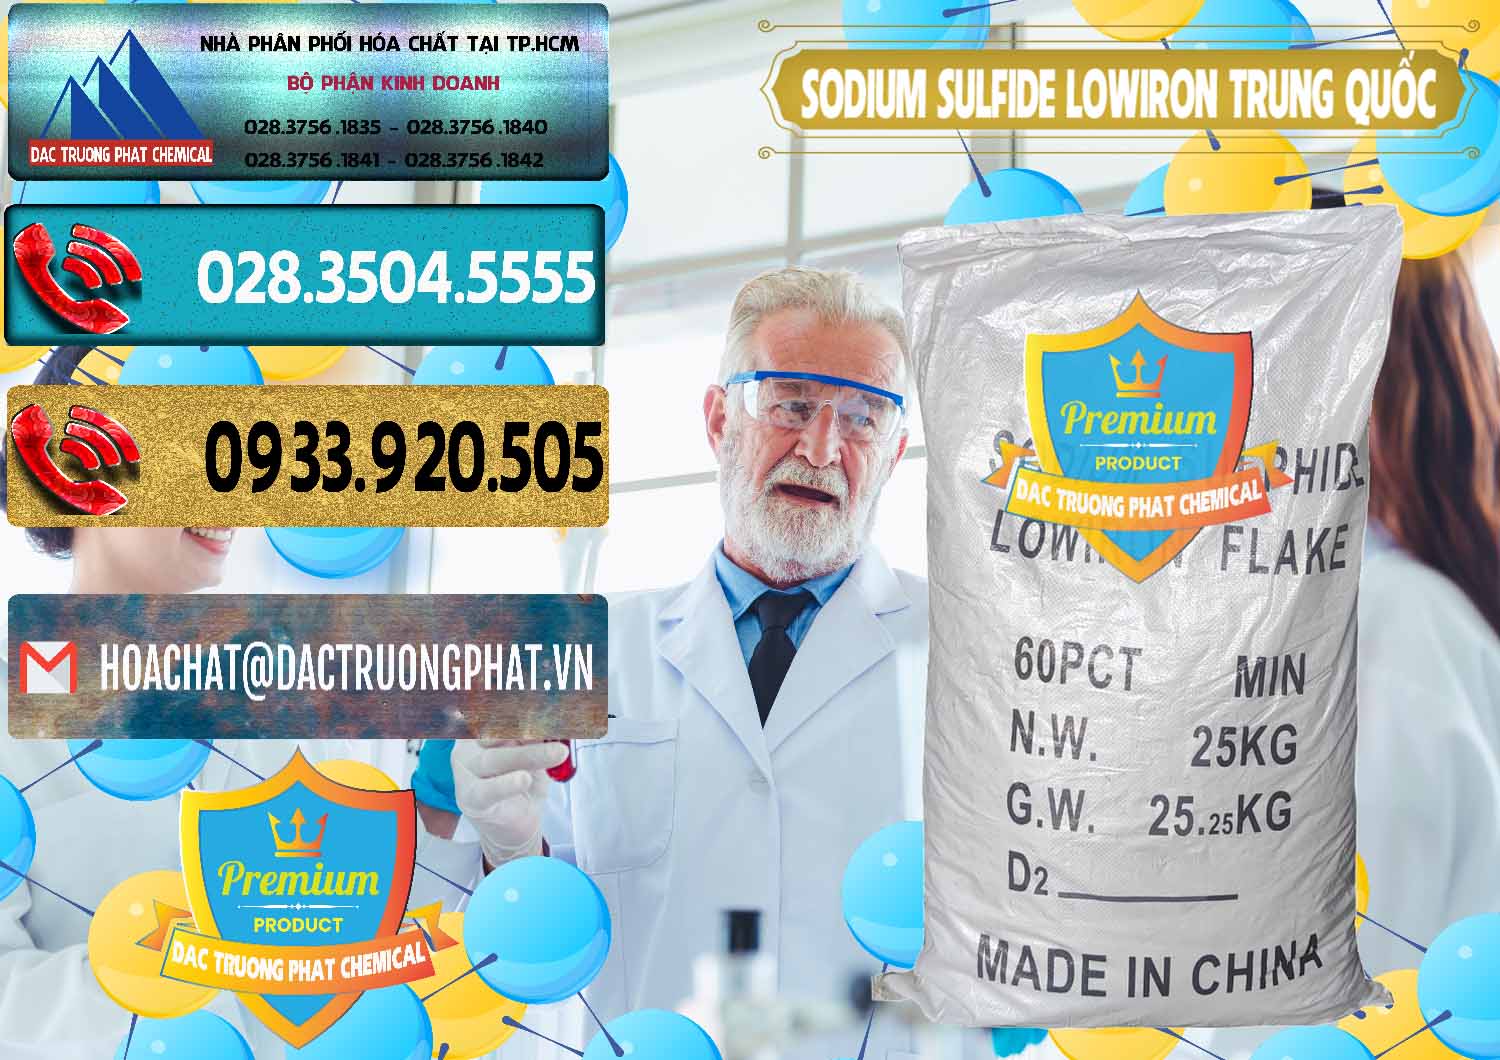 Nhà cung ứng và bán Sodium Sulfide NA2S – Đá Thối Lowiron Trung Quốc China - 0227 - Công ty phân phối & cung cấp hóa chất tại TP.HCM - hoachatdetnhuom.com